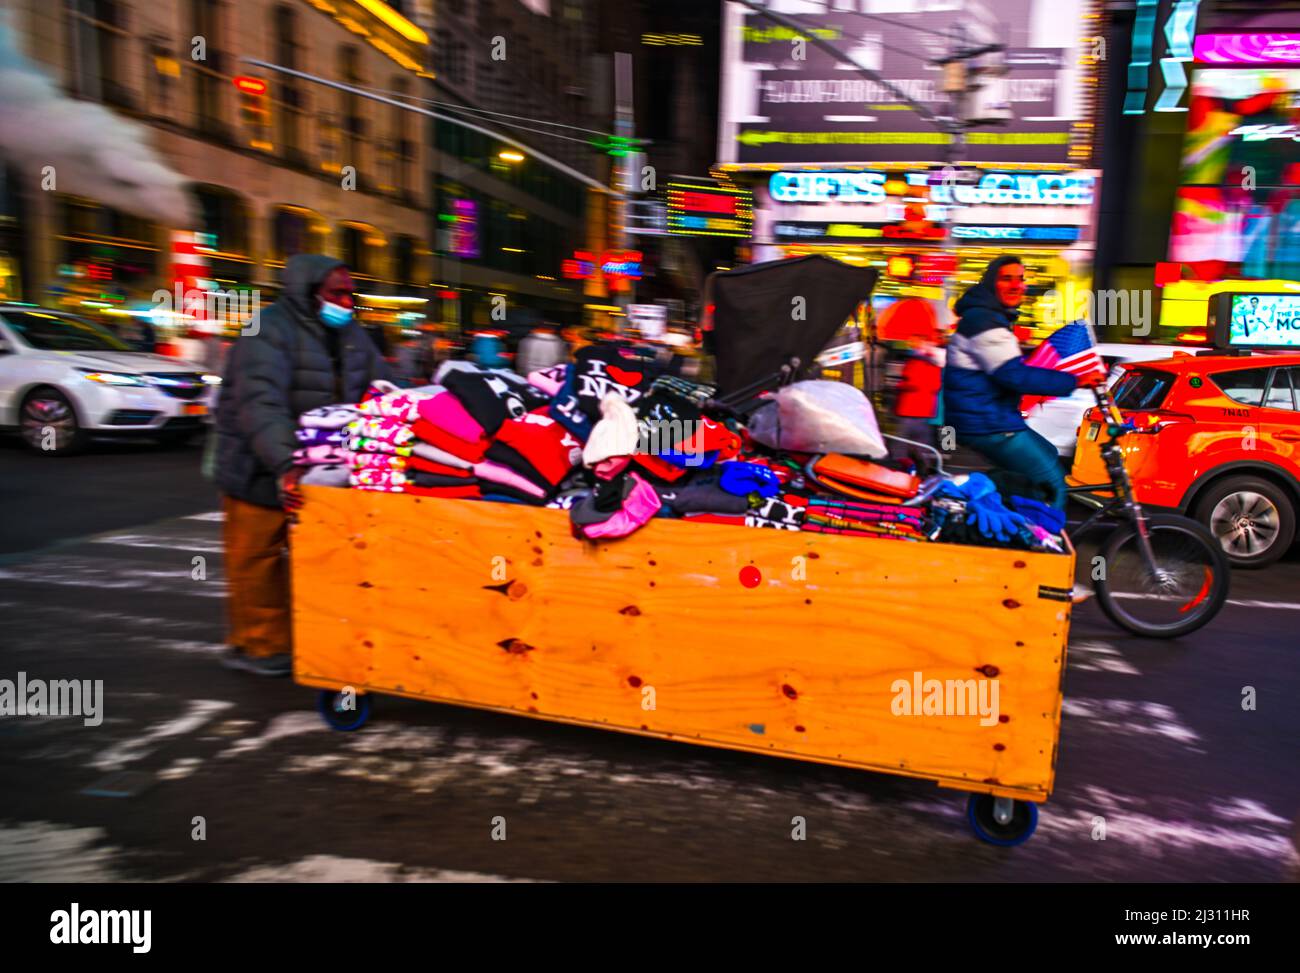 Homme avec sa boîte de marchandises à vendre en le poussant vers le bas 42nd Street à Manhattan avec la circulation et un homme sur un bicycle Banque D'Images